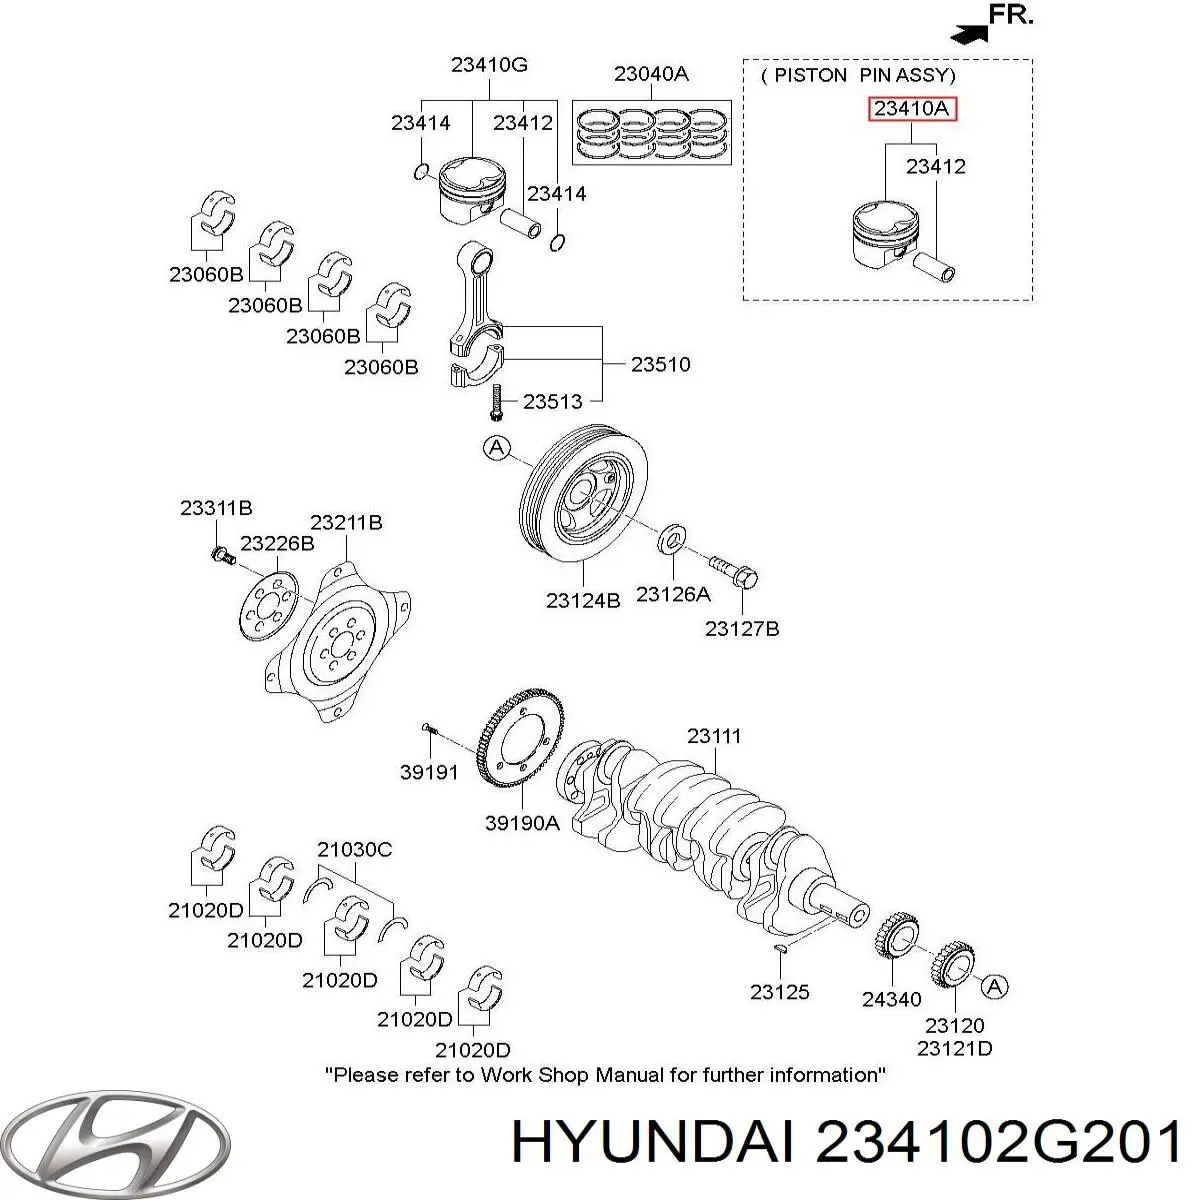 234102G201 Hyundai/Kia pistão com passador sem anéis, std